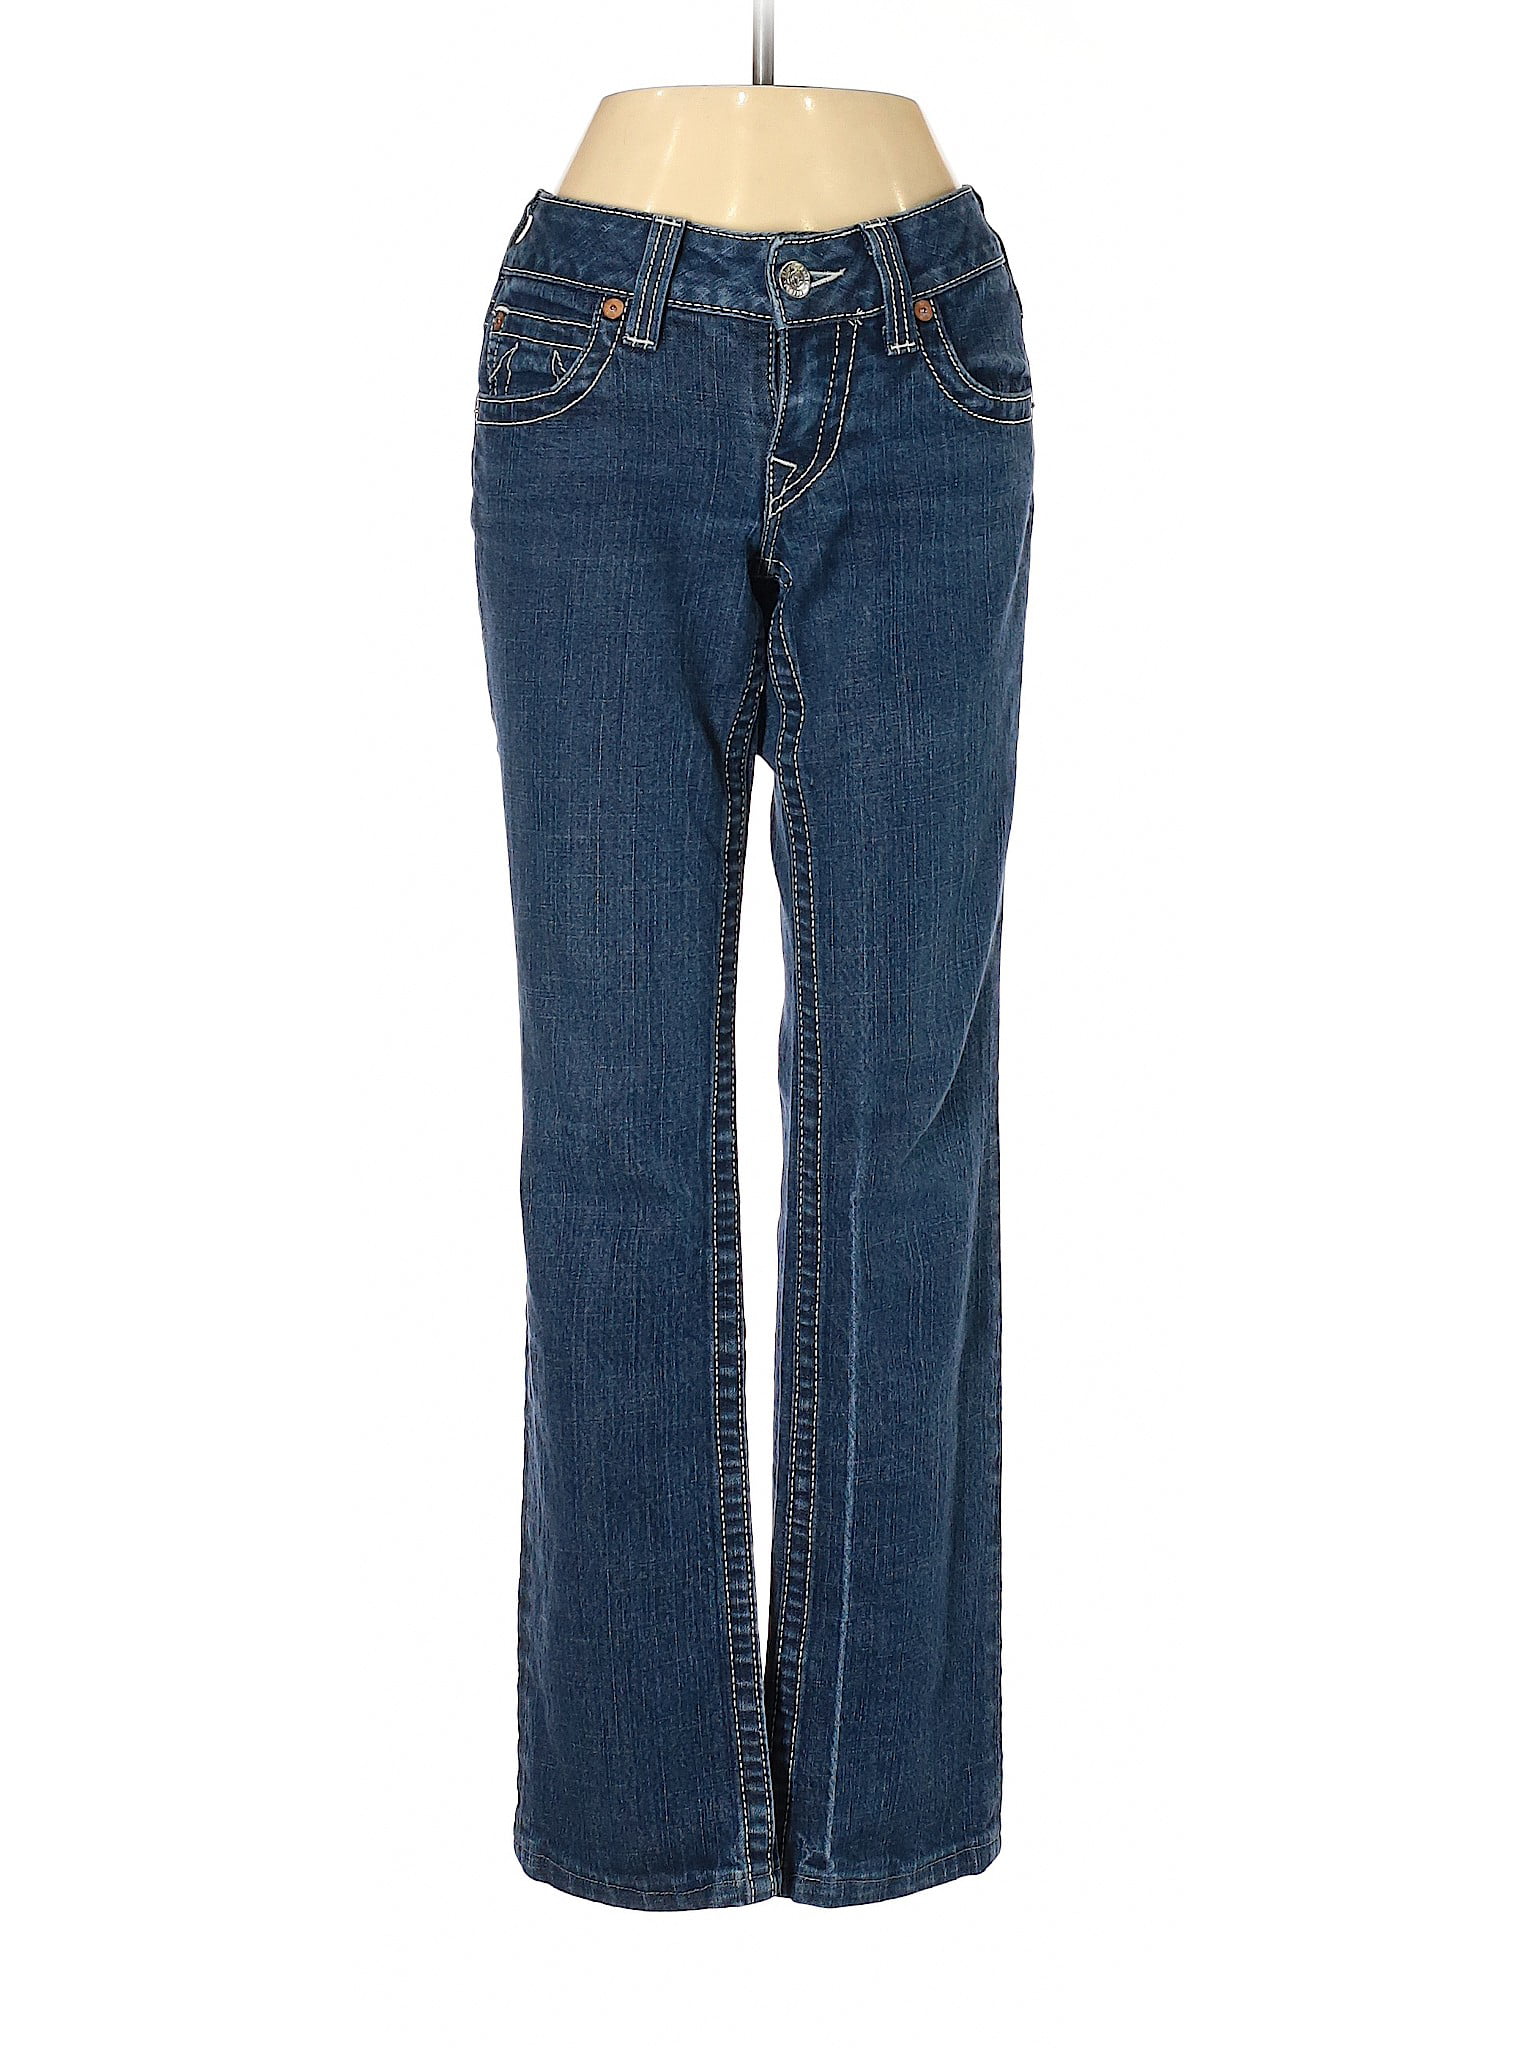 True Religion - Pre-Owned True Religion Women's Size 27W Jeans ...